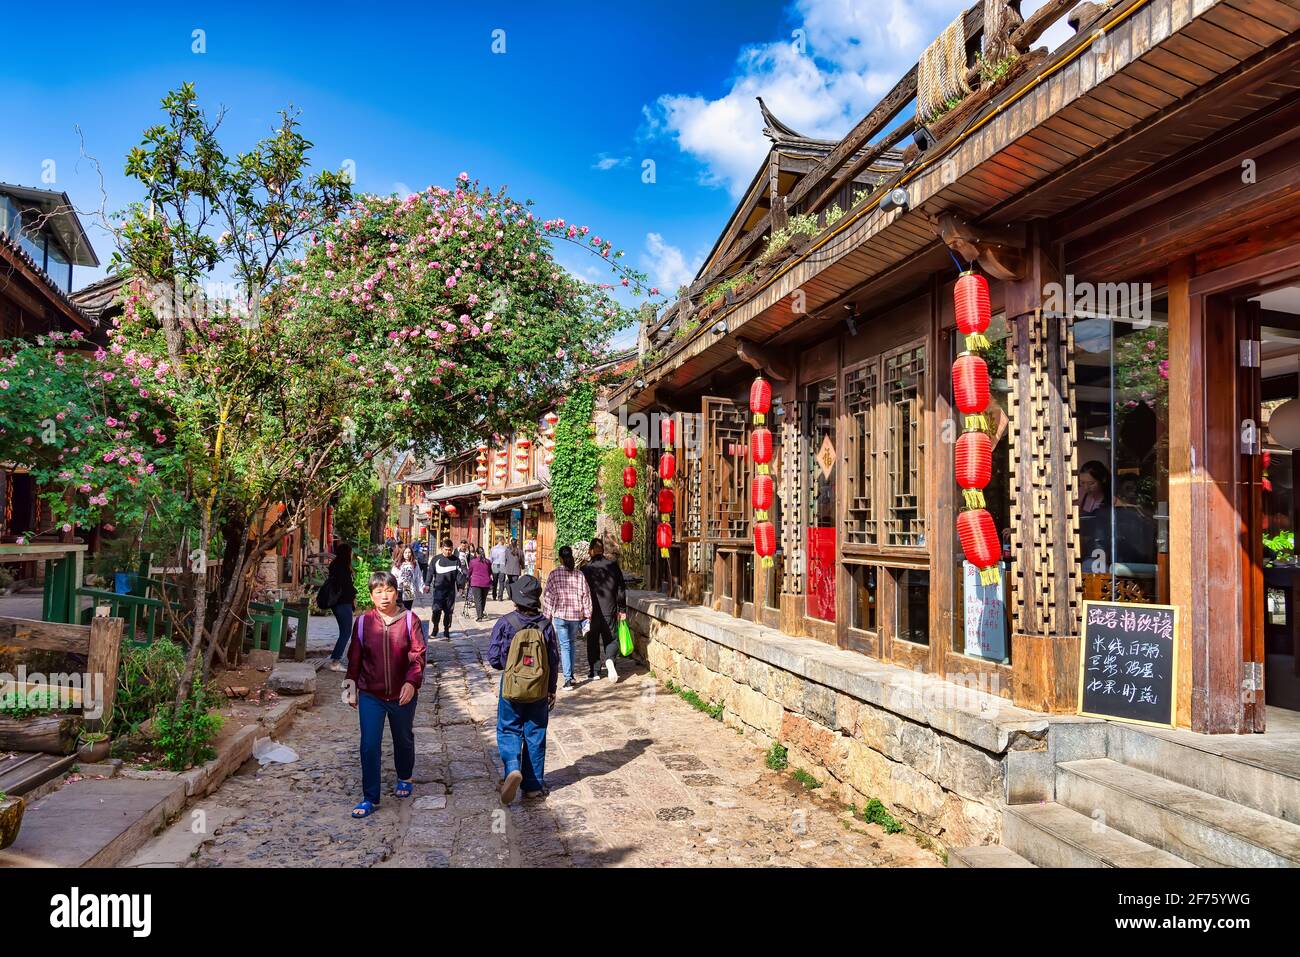 Shuhe Naxi, Chine - 28 avril 2019 : personnes marchant dans la rue principale du village antique de Shuhe Naxi. Ce village est l'un des plus bien conservés Banque D'Images